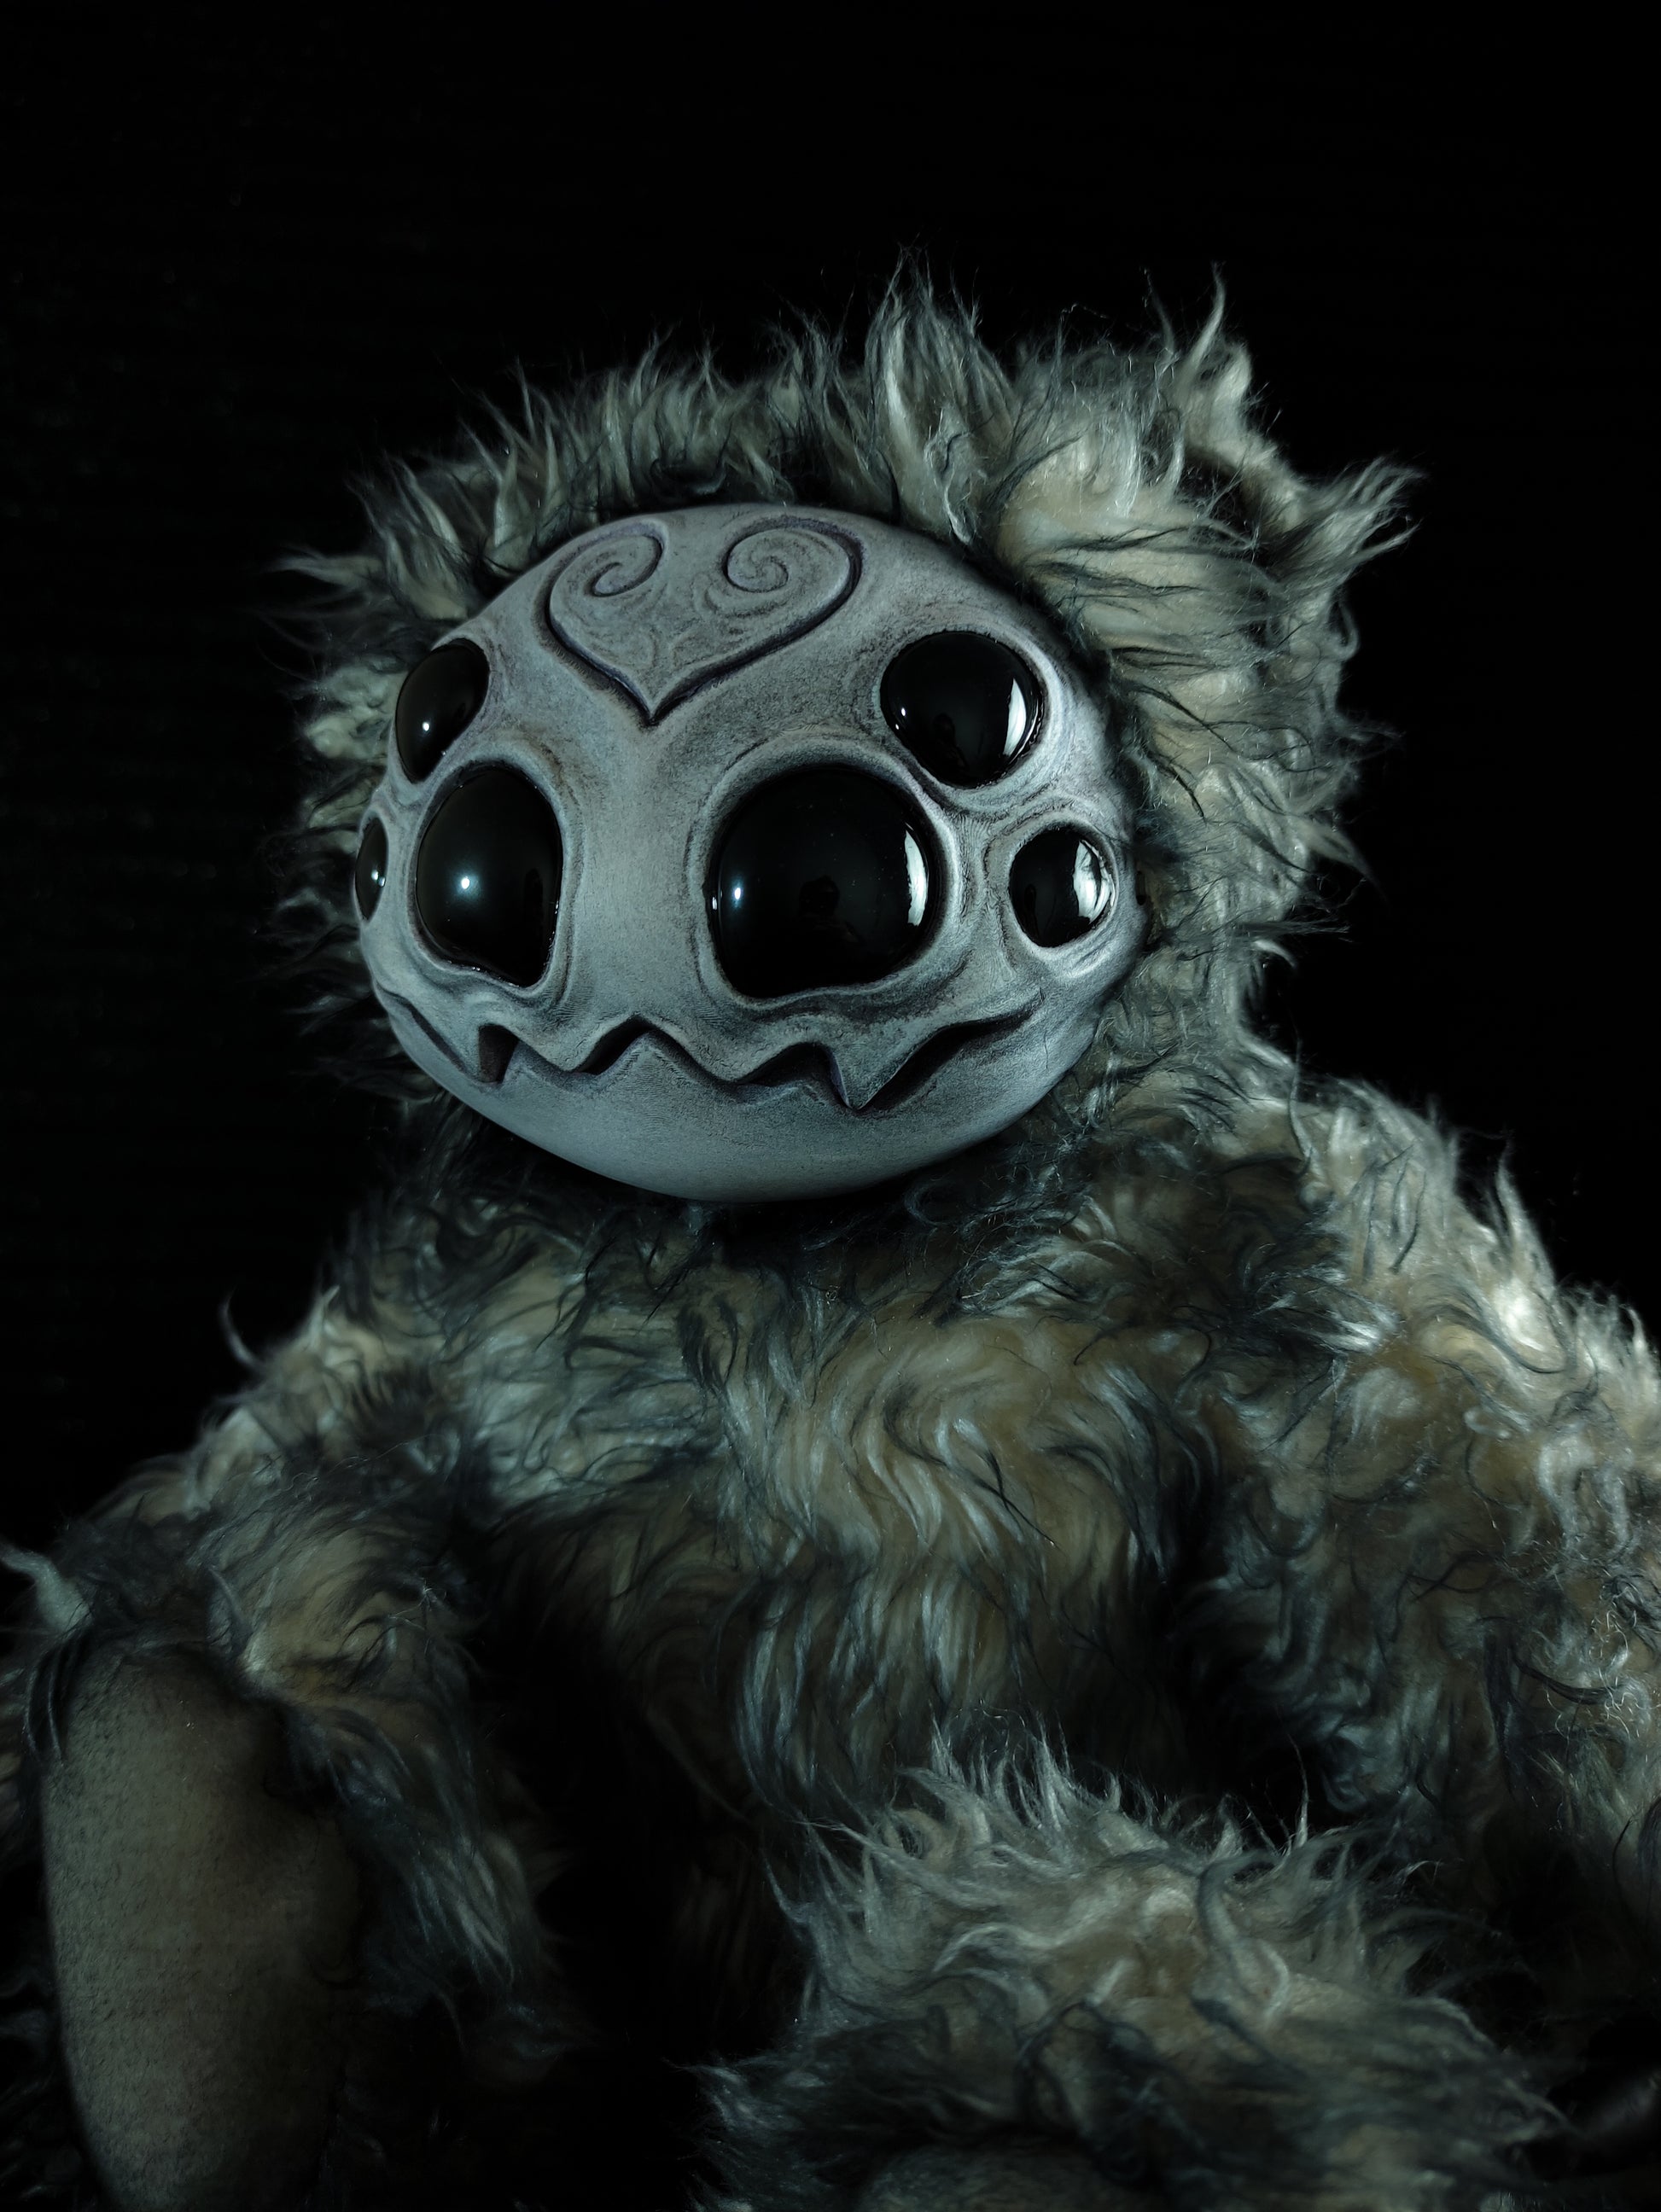 Arakobe (Goulrond Ver.) - Monster Art Doll Plush Toy